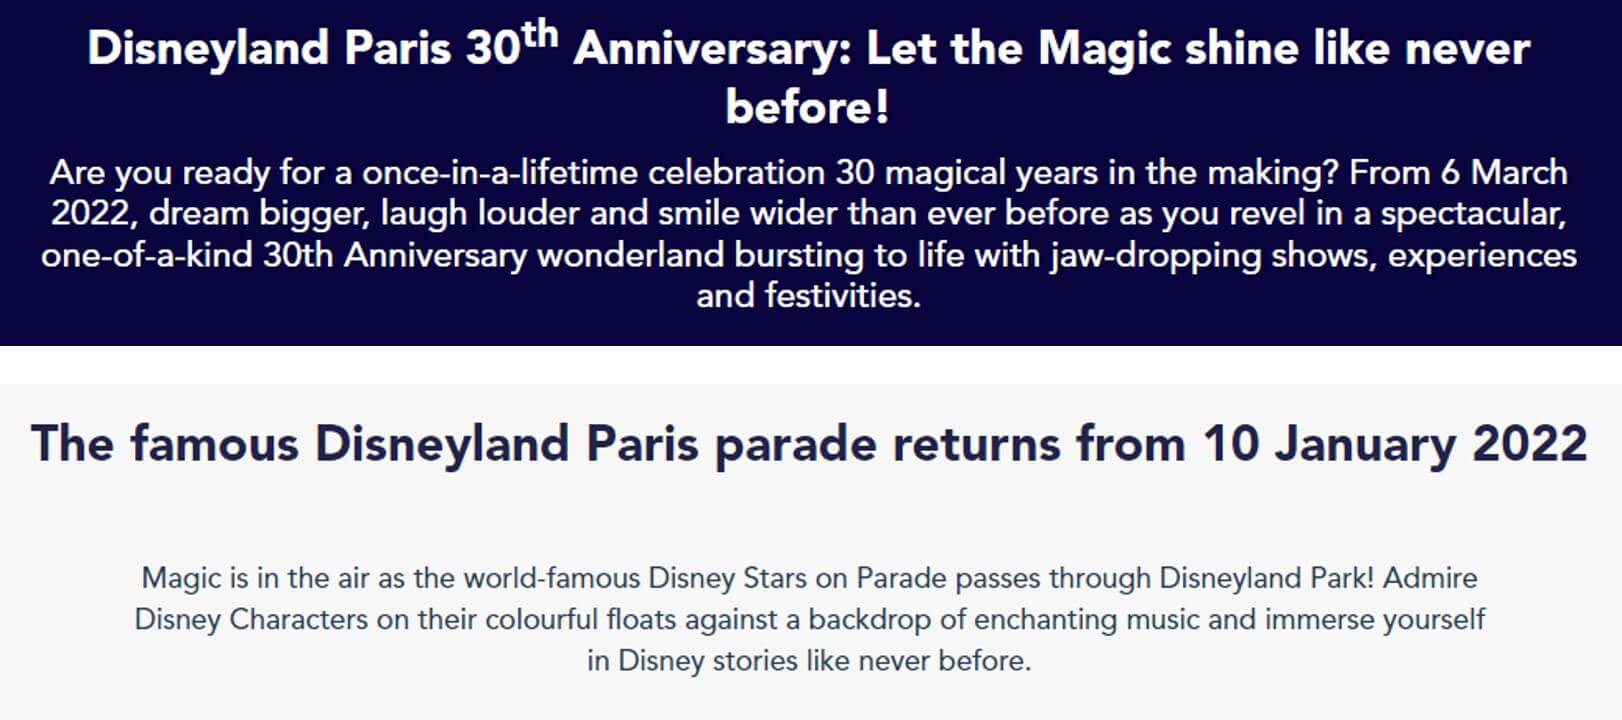 디즈니랜드 파리에서 2022년에 30주년을 맞아 진행하는 행사 소개와 퍼레이드 시작에 대한 안내장